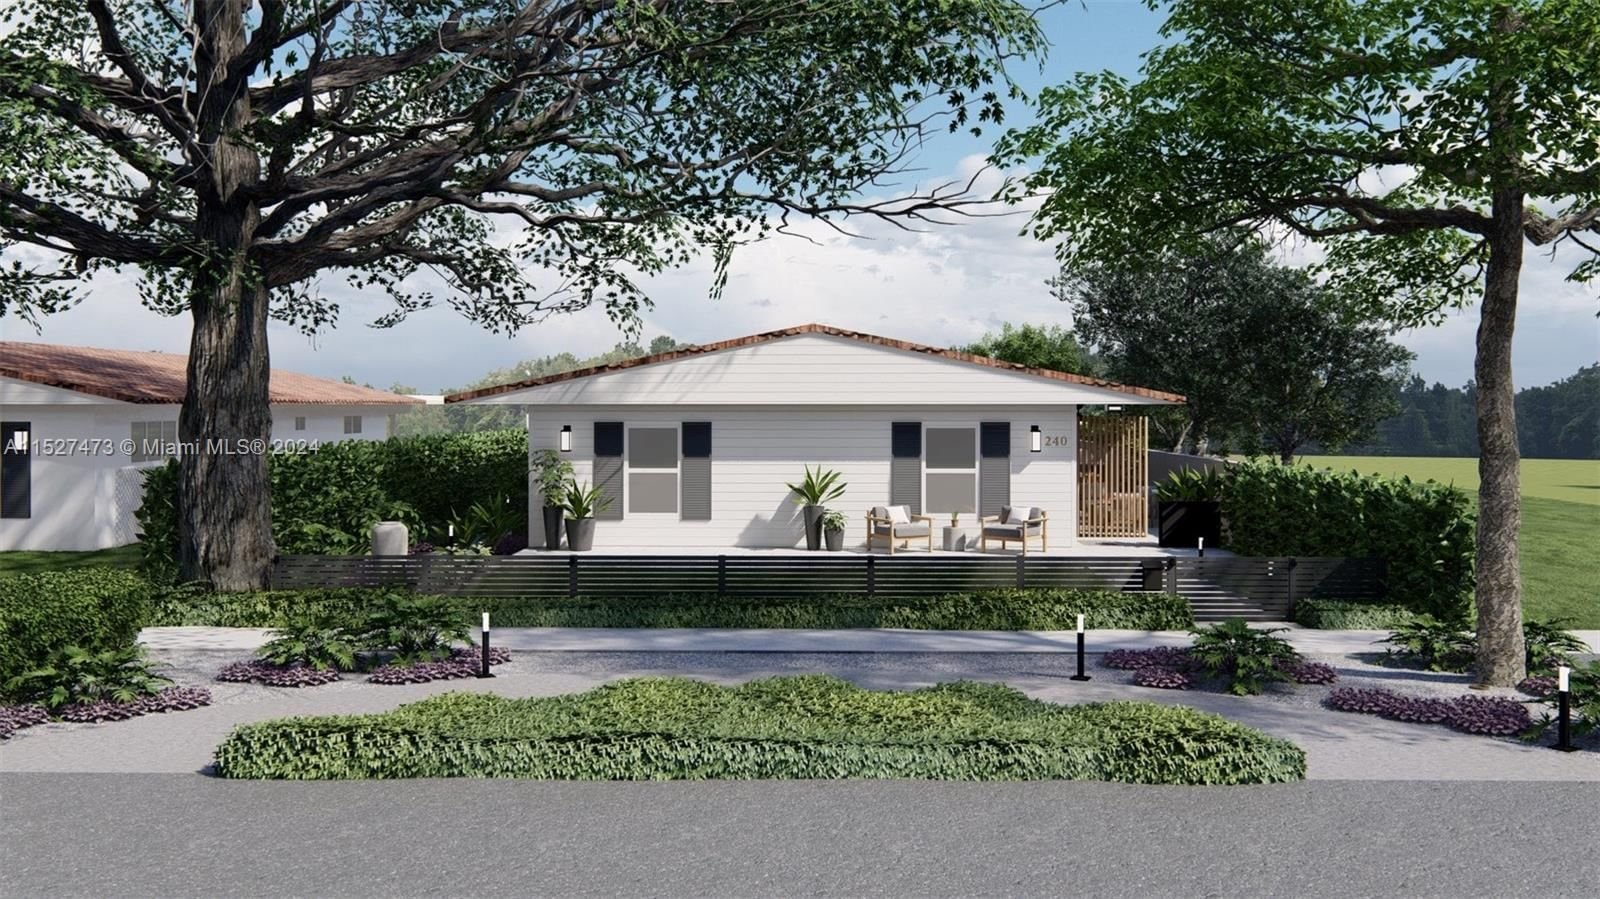 Real estate property located at 240 97th St, Miami-Dade County, MIAMI SHORES SEC 1 AMD, Miami Shores, FL